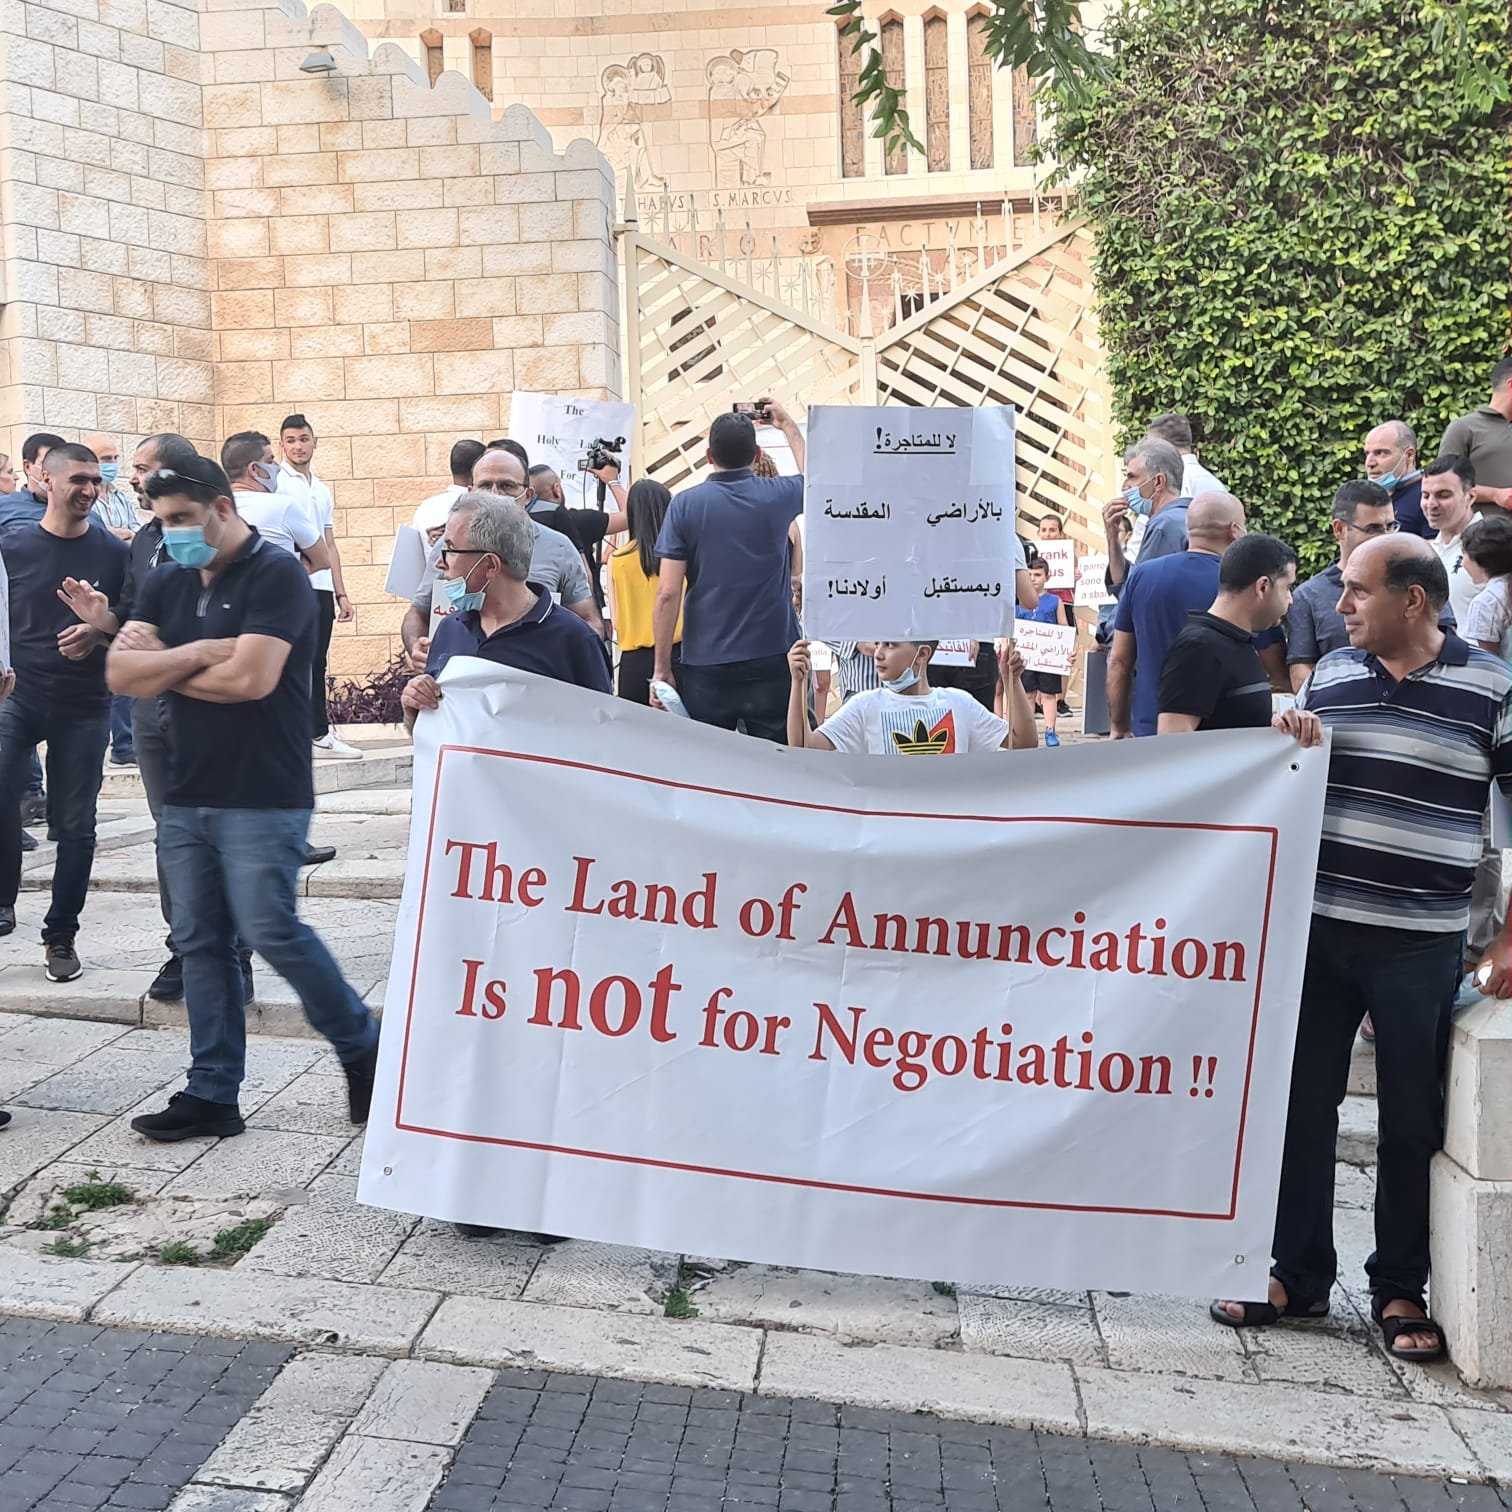 مباشر، الناصرة: مسيرة شموع وتظاهرة احتجاجية ضد صفقات بيع الاراضي بعنوان "ارض البشارة مش للتجارة"-14